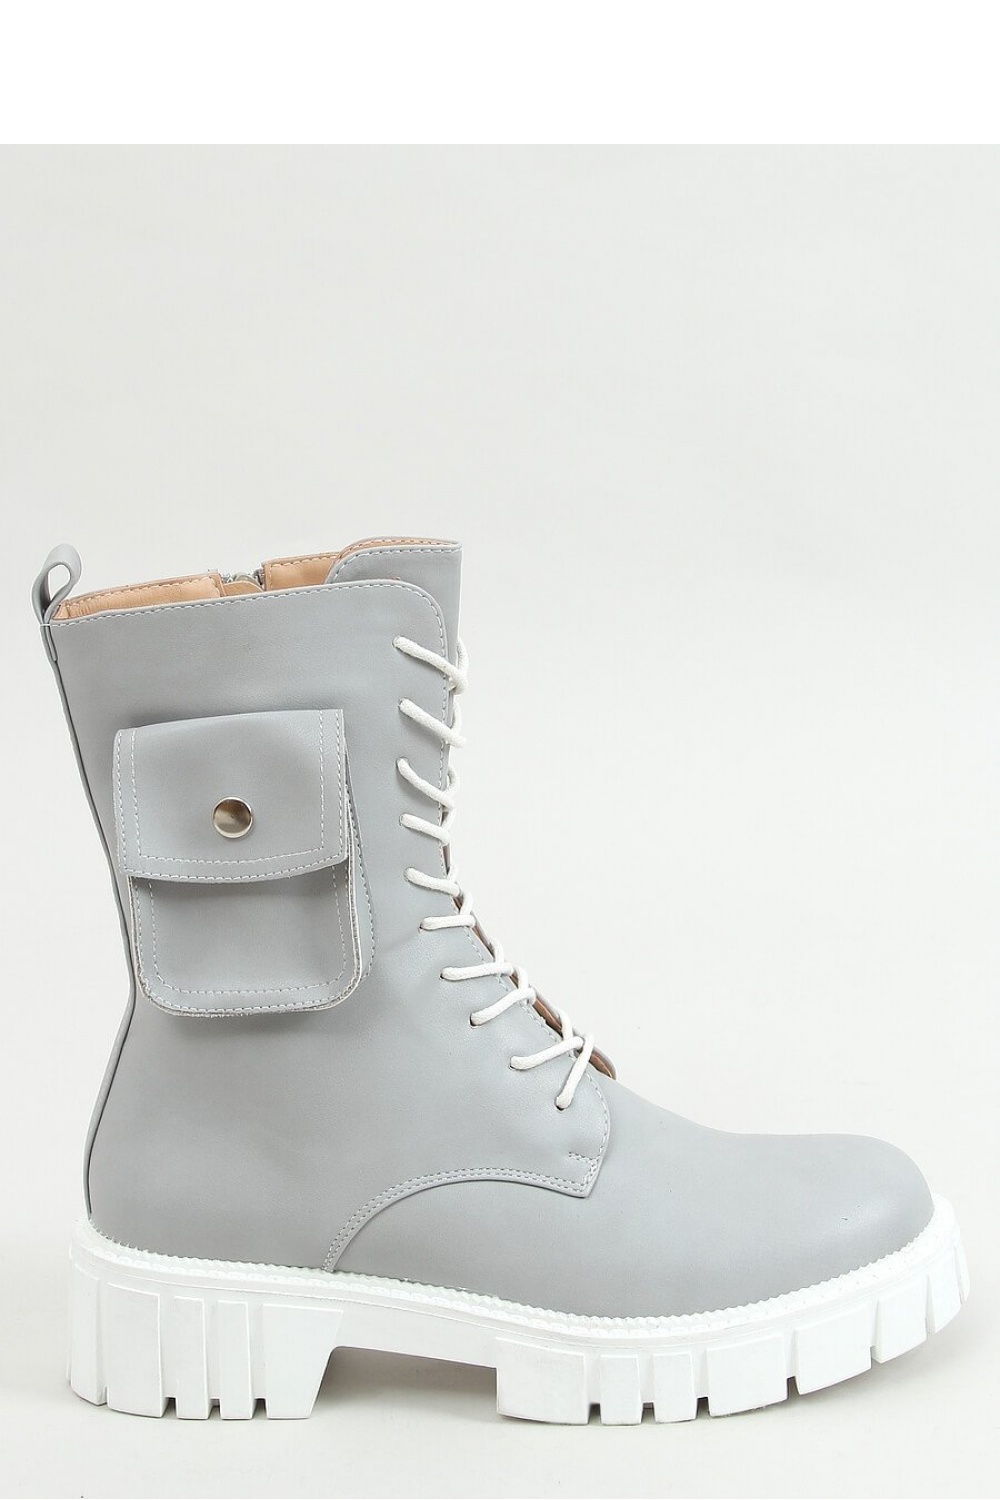 Boot model 157222 Inello grau Damen